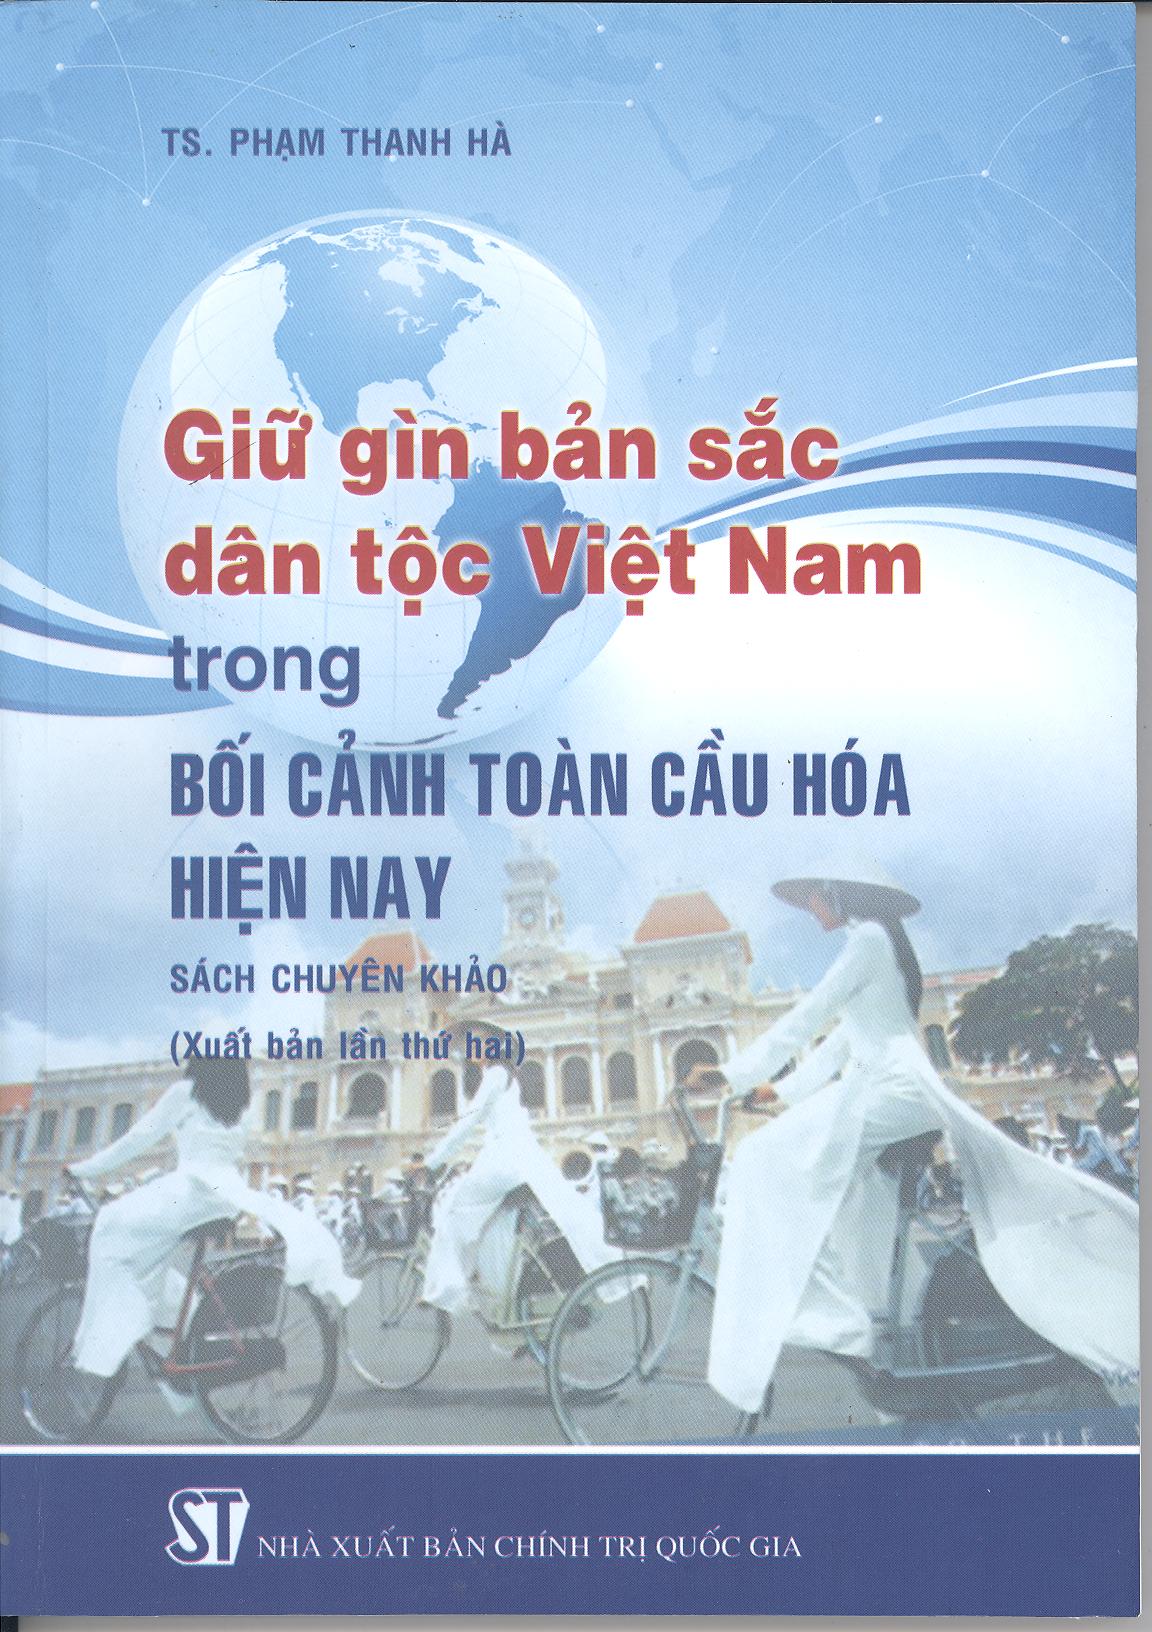 Giữ gìn bản sắc dân tộc Việt Nam trong bối cảnh toàn cầu hóa hiện nay (sách chuyên khảo - xuất bản lần thứ hai)